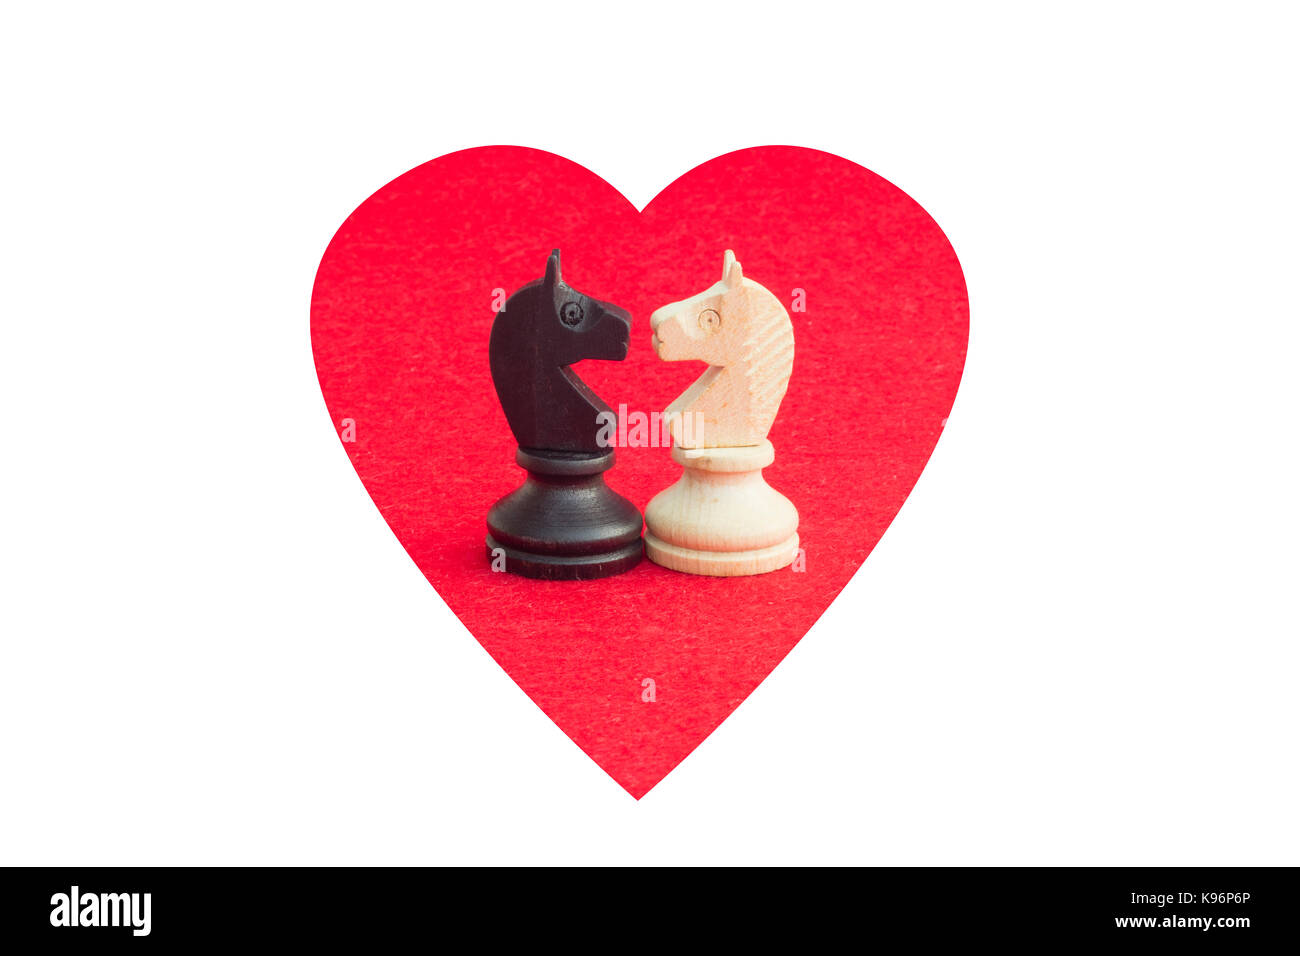 Cavallo bianco e cavallo nero, tradizionalmente affrontato nel gioco degli scacchi, sono riconciliati. Immagine in background isolato con forma di cuore. Foto Stock